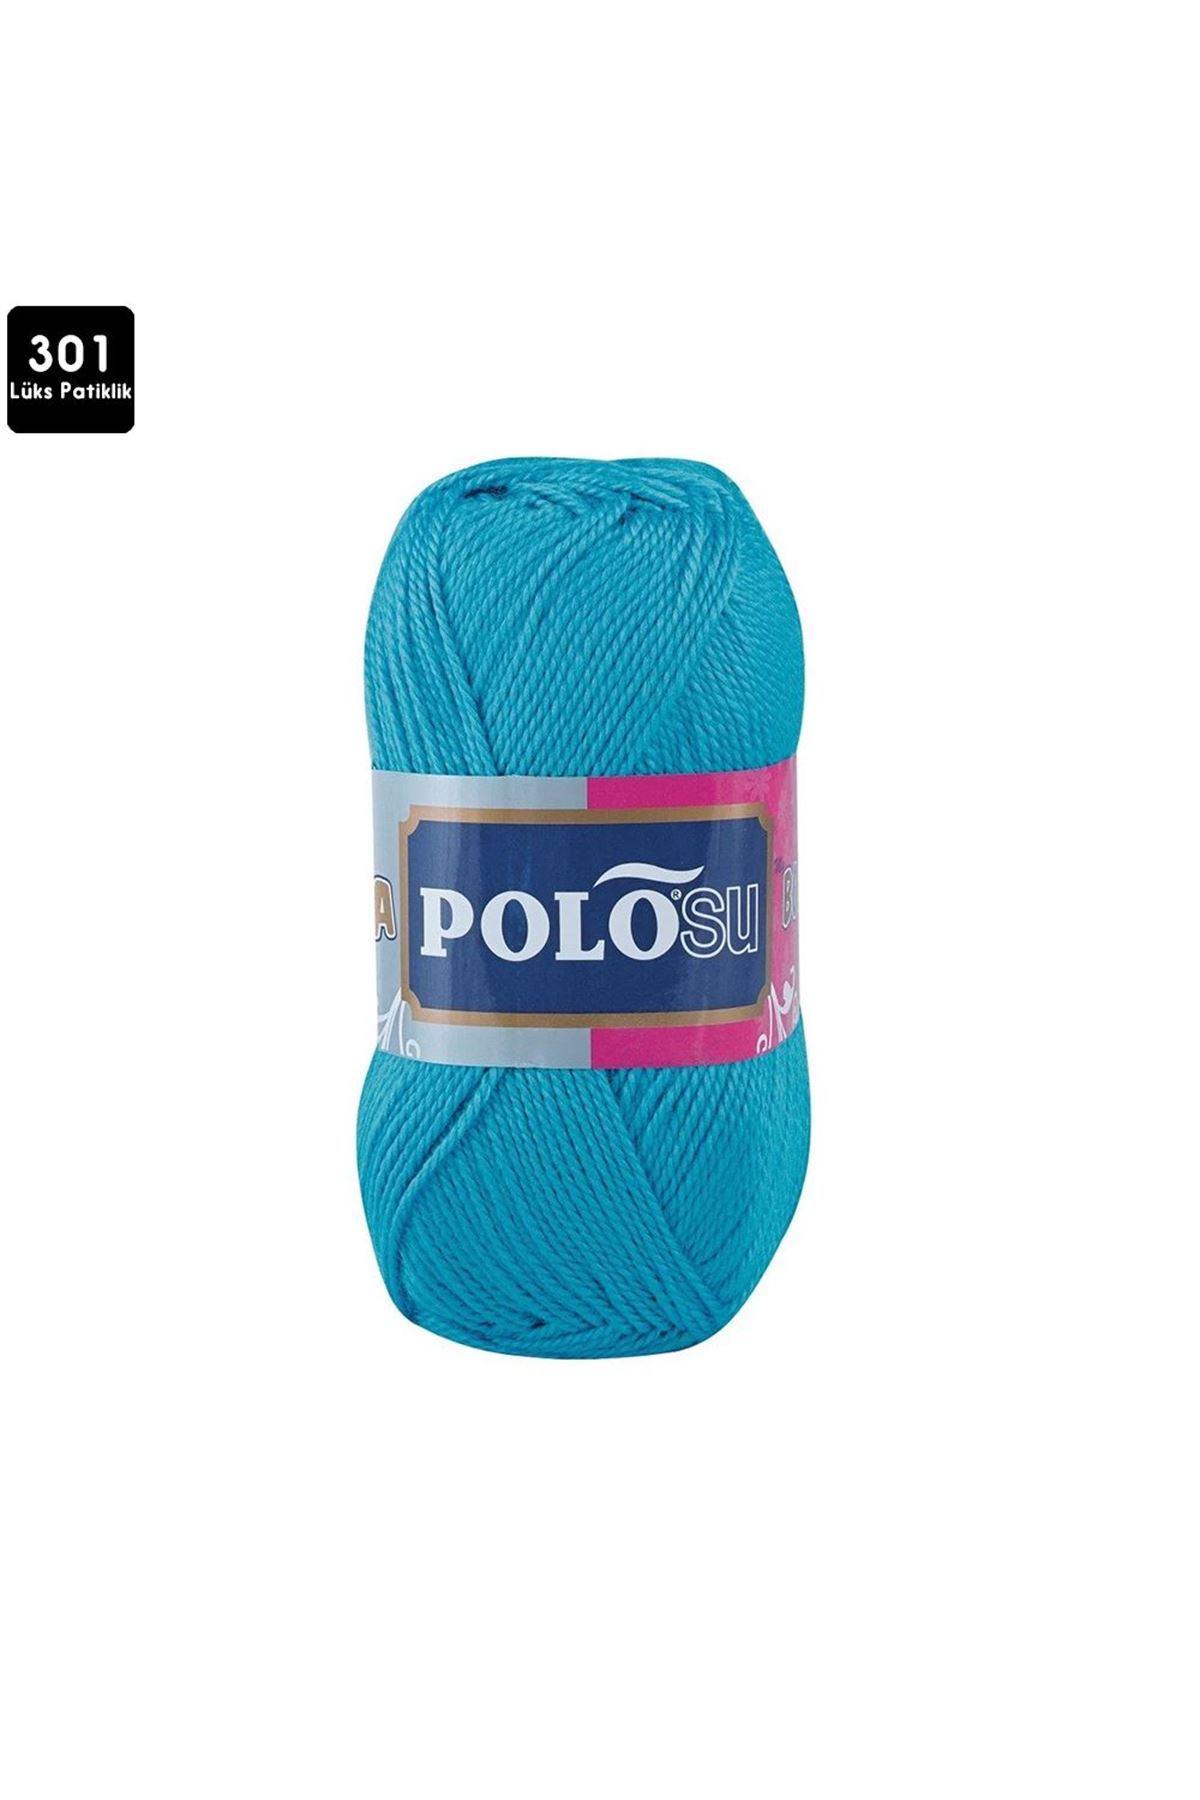 PoloSU Lüks Patiklik Renk No:301